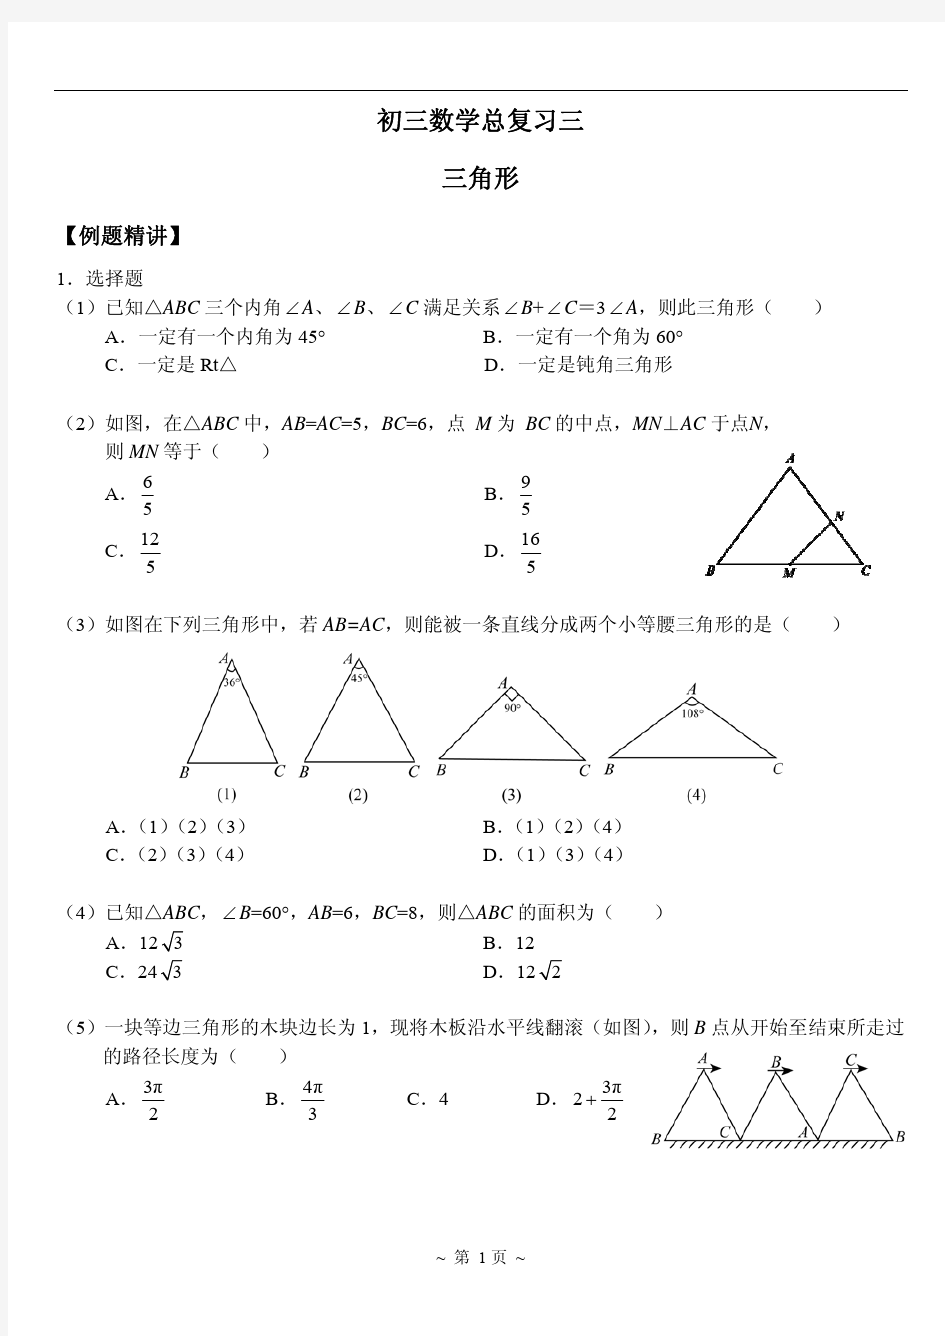 3整式、分式、二次根式(二)、三角形(一)_已标记密文